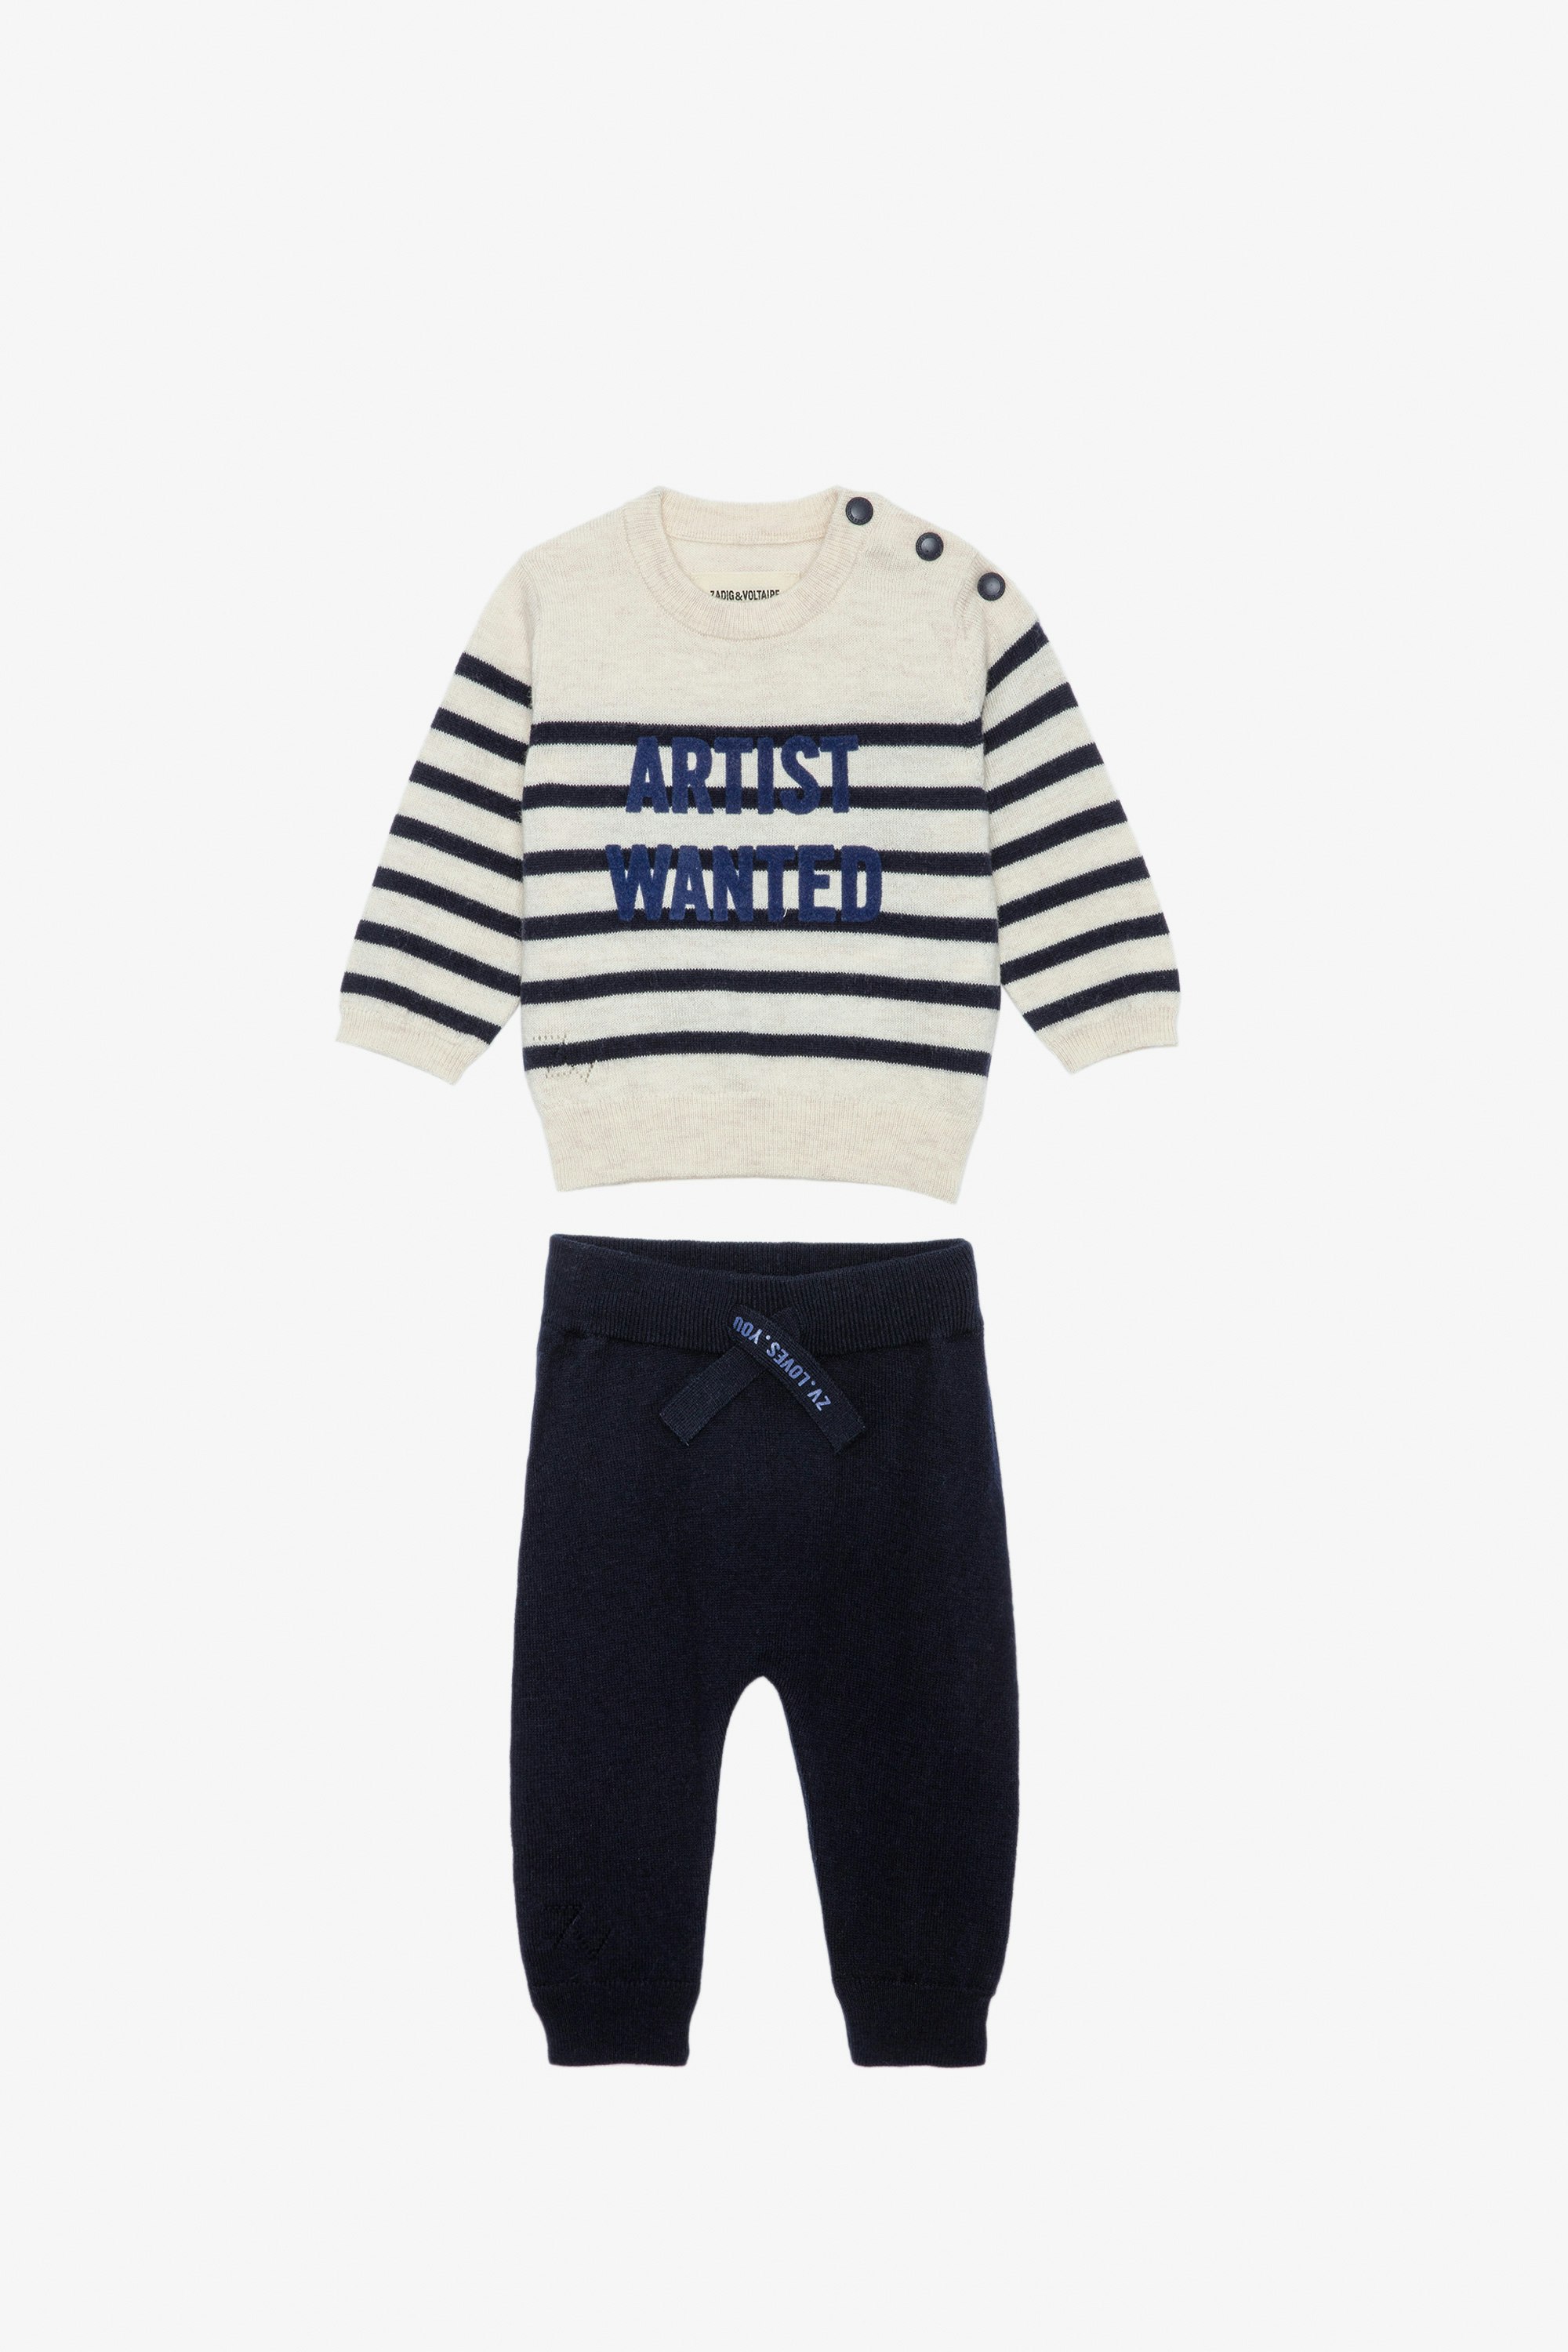 Completo Pona Neonato - Completo maglione a righe con scritta "Artist Wanted" e pantaloni in maglia blu da neonato.